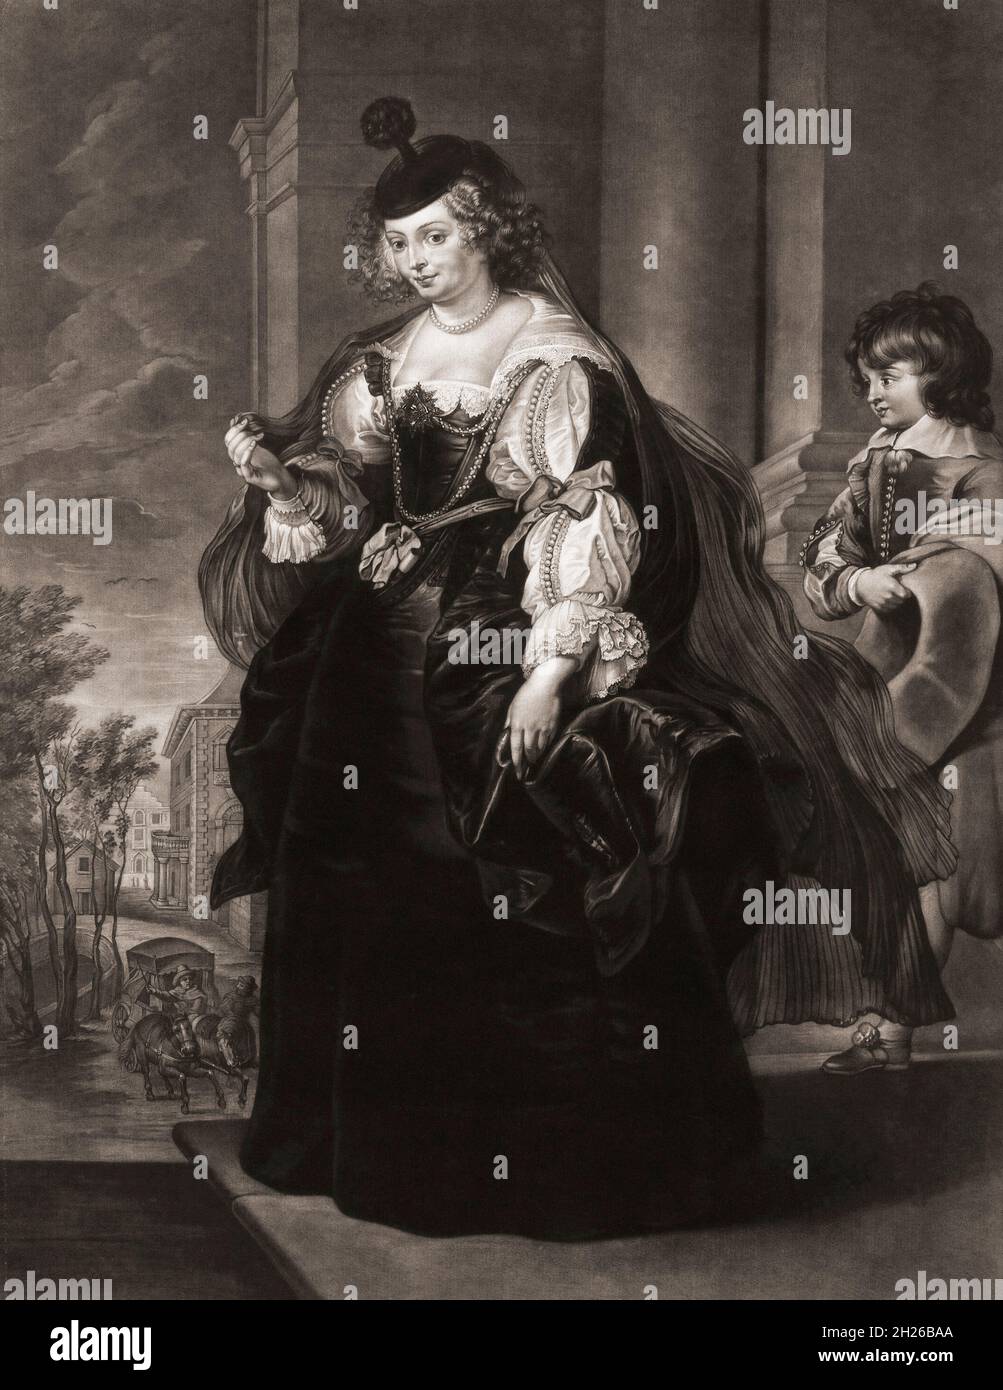 Helena Fourment o Helene Fourment, 1614 – 1673. Seconda moglie del pittore barocco Peter Paul Rubens. Ha modellato diversi ritratti per Rubens e anche per molte delle sue opere mitologiche e religiose. Da una stampa del XVIII secolo di Richard Earlom dopo un'opera di Peter Paul Rubens. Foto Stock